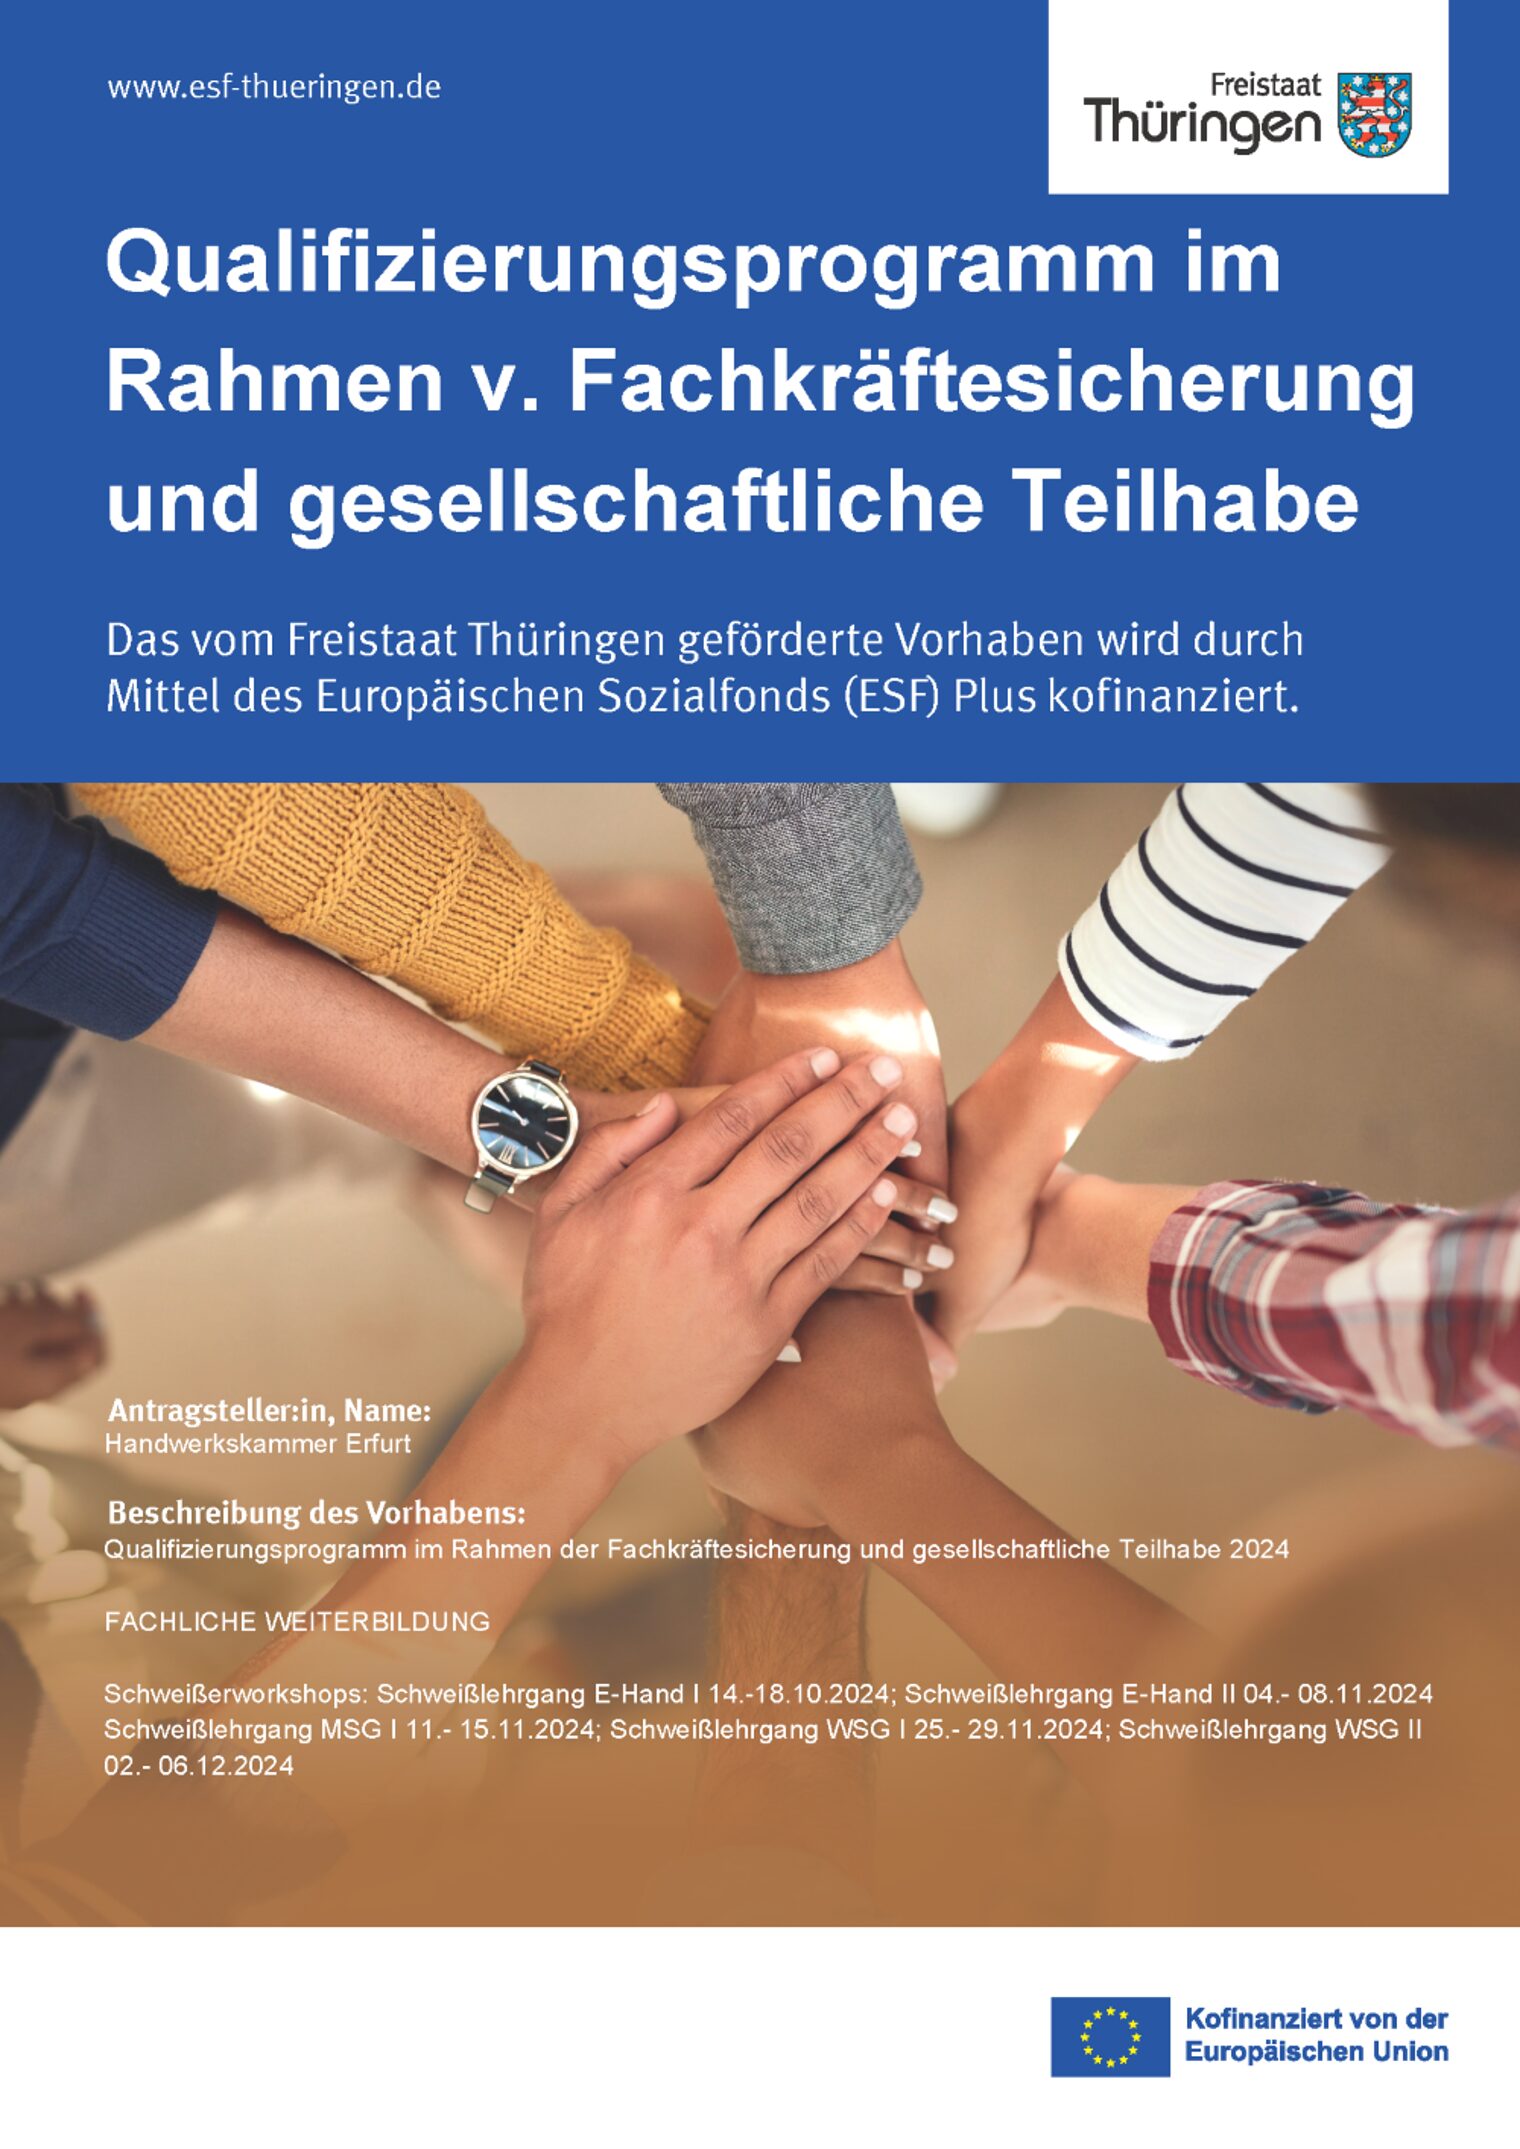 Thueringen-Vorlagen-ESF-Plakat-Haende FKS Schweißen